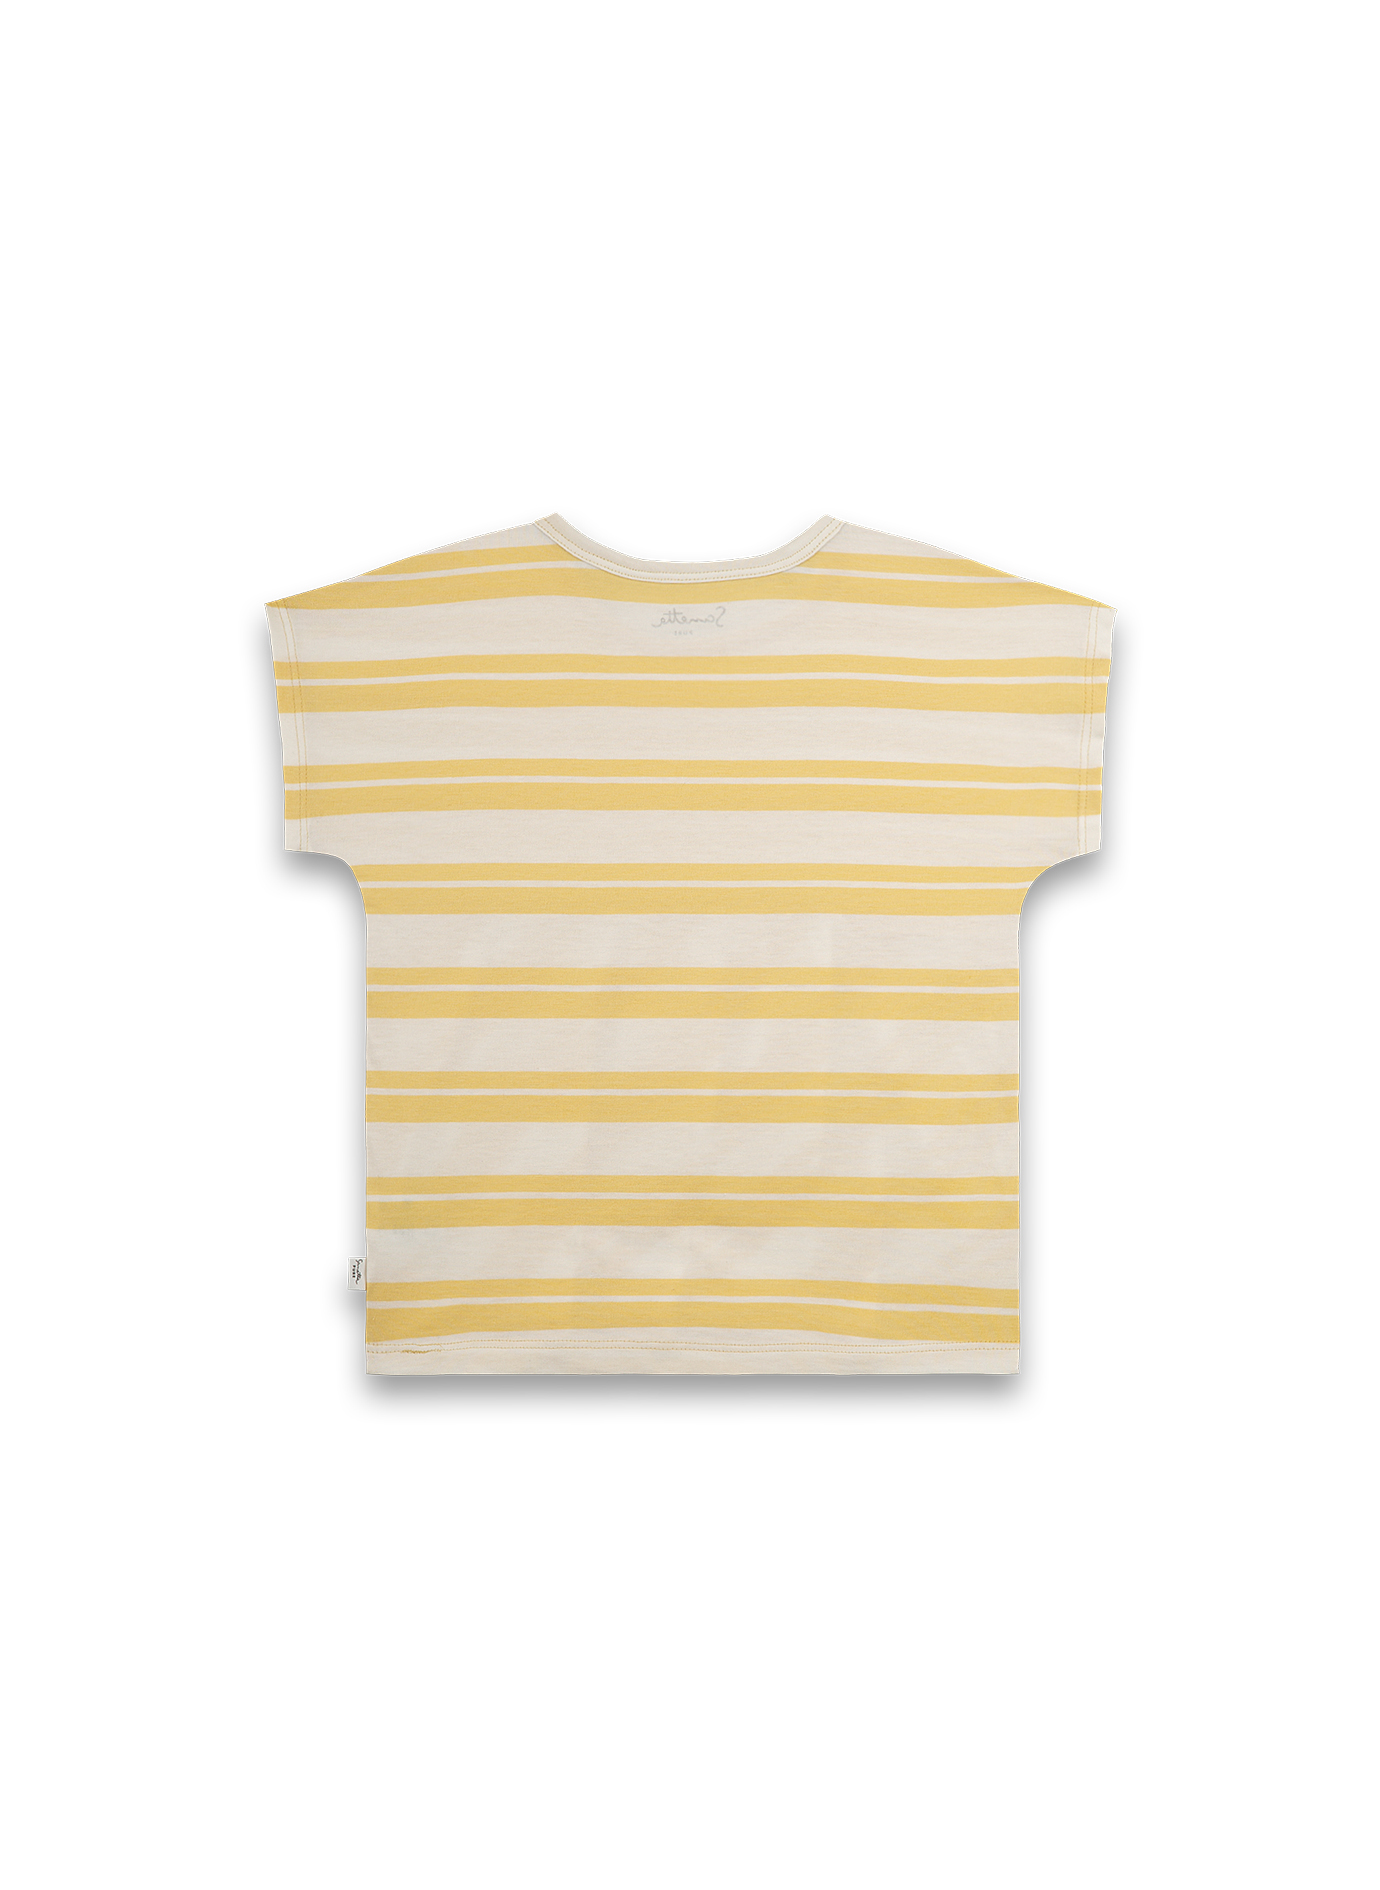 Mädchen T-Shirt Gelb Ringel